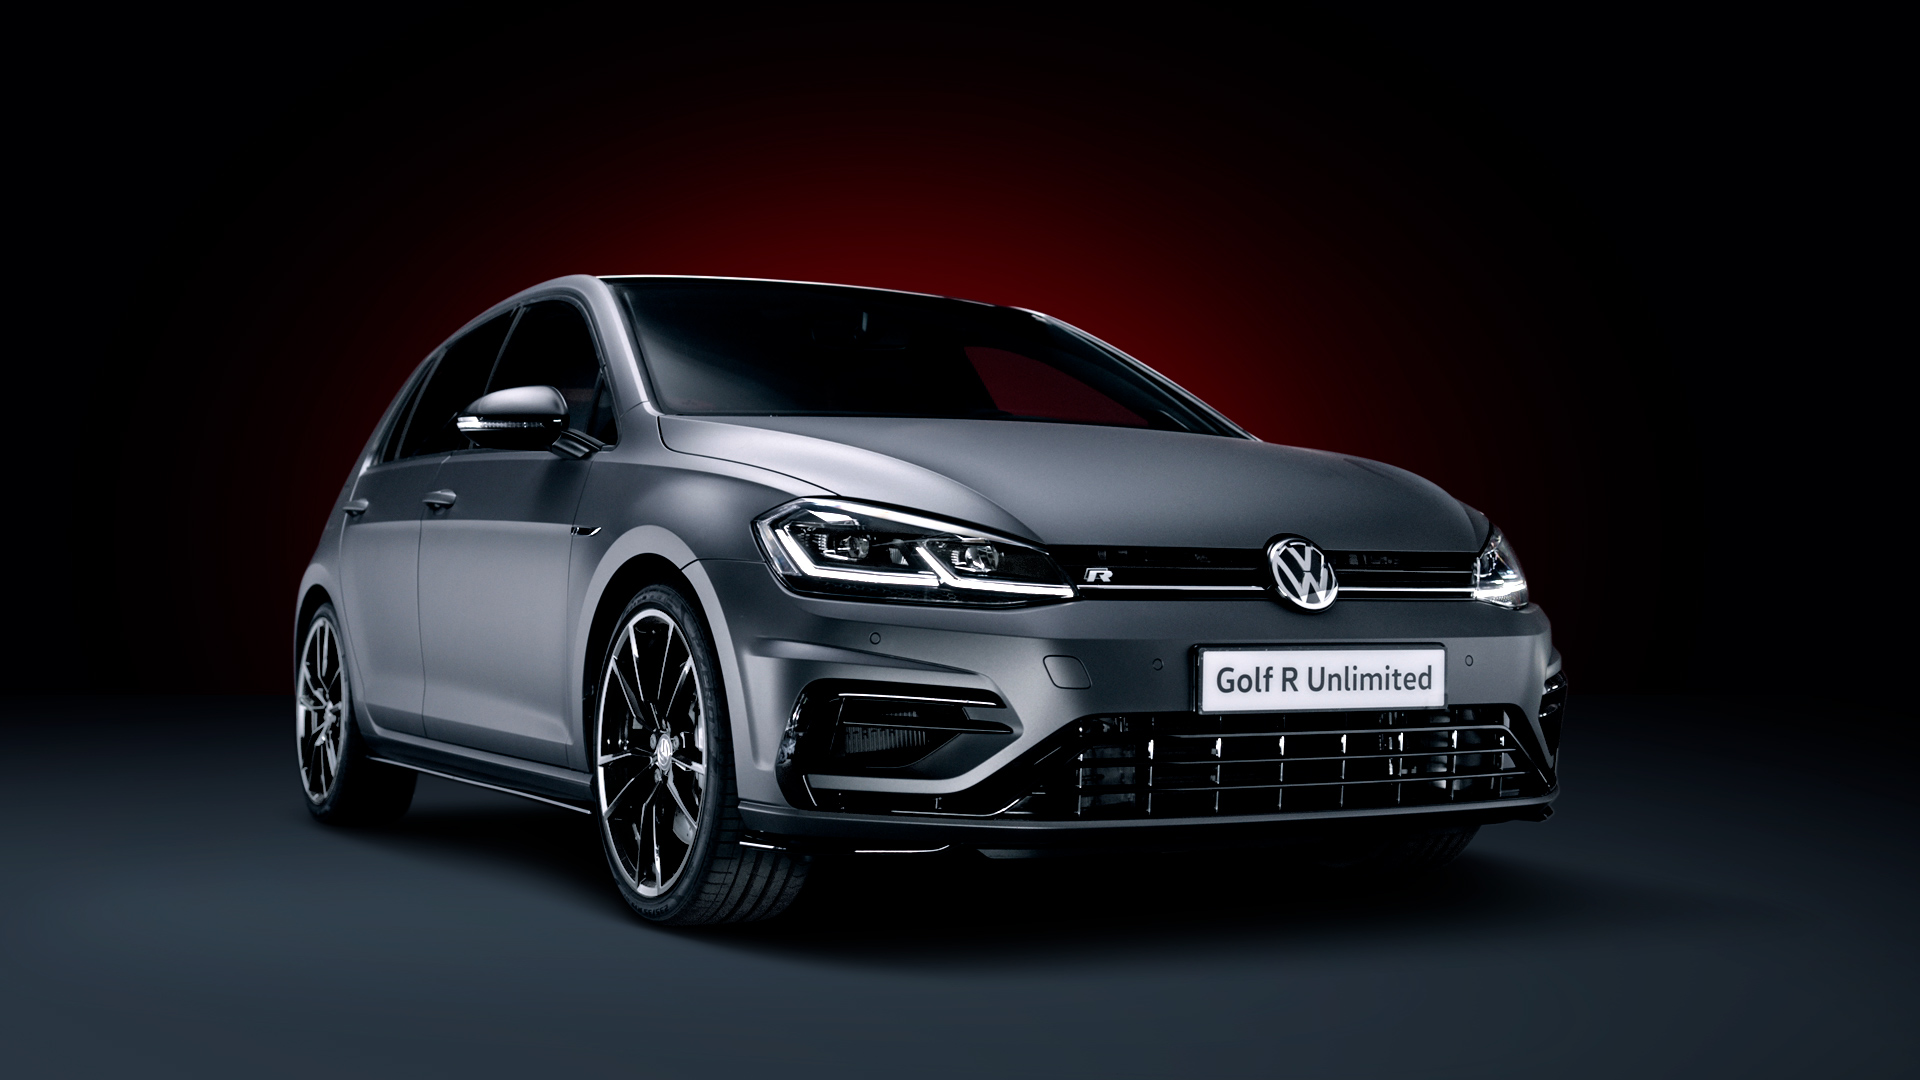 Volkswagen Golf R Unlimited: solo 50 unidades con 310 CV